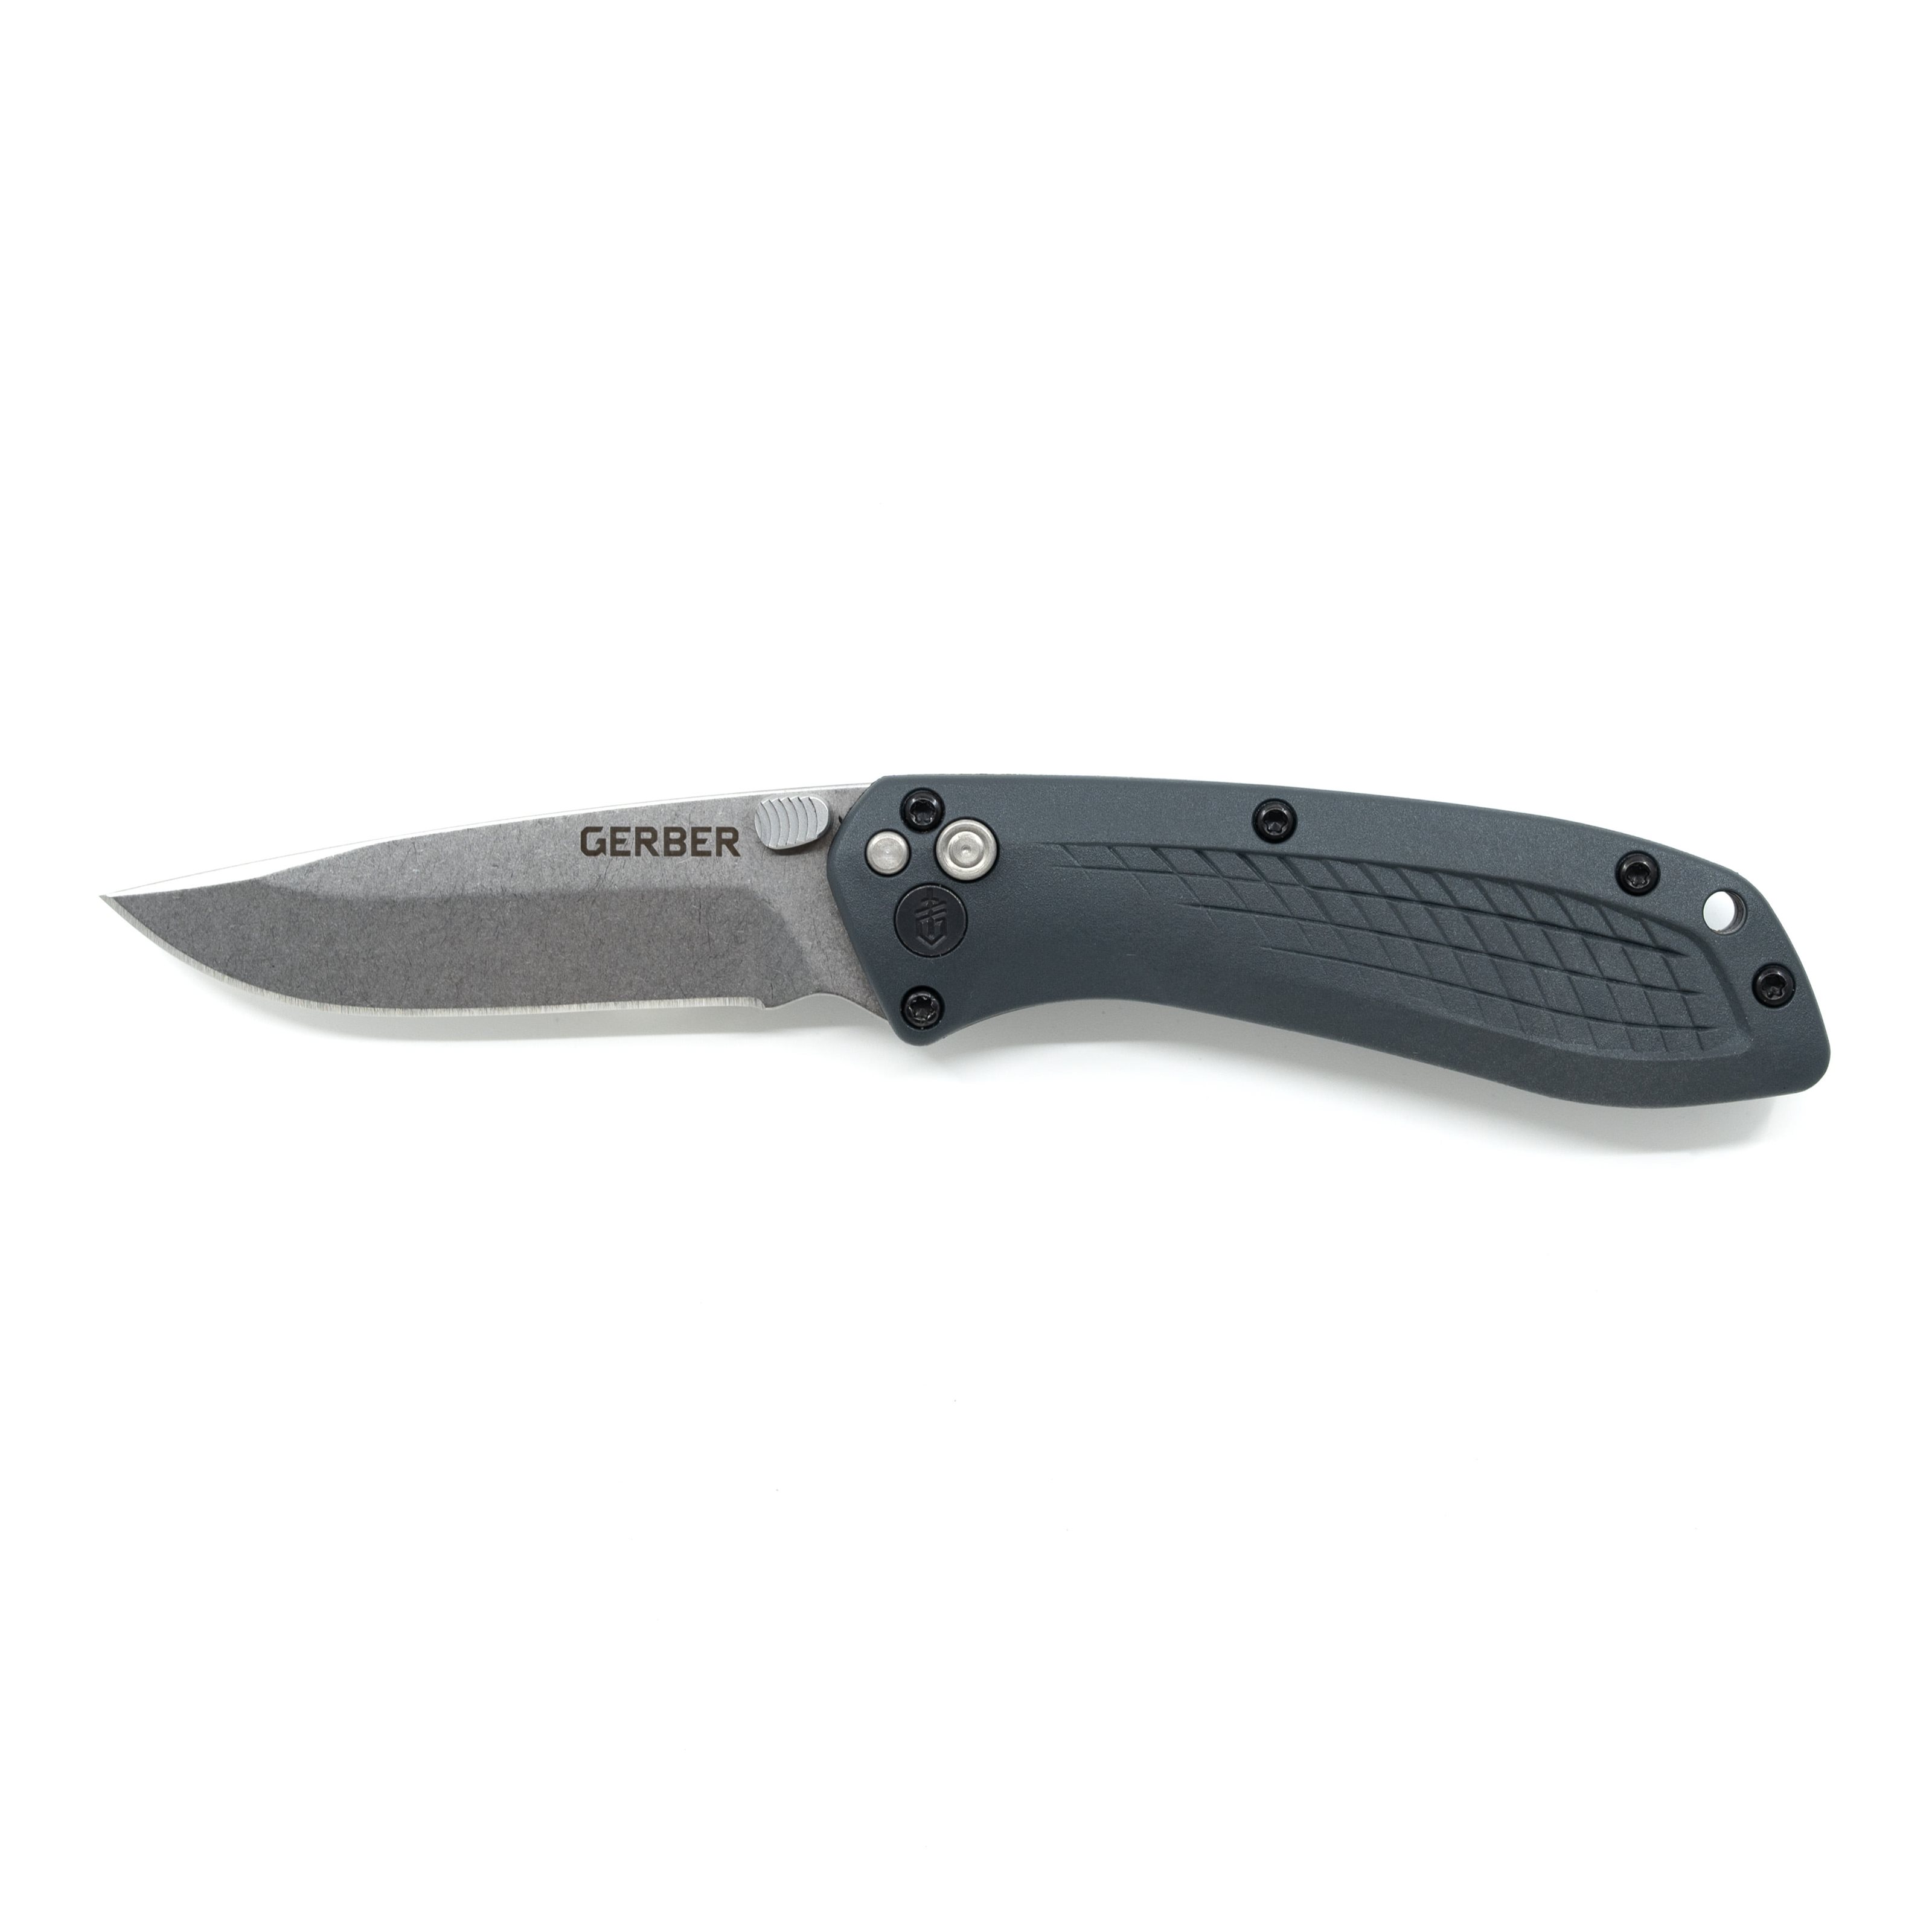 Folding Knife US ASSIST S30V BLACK GERBER 30-001205 L-11